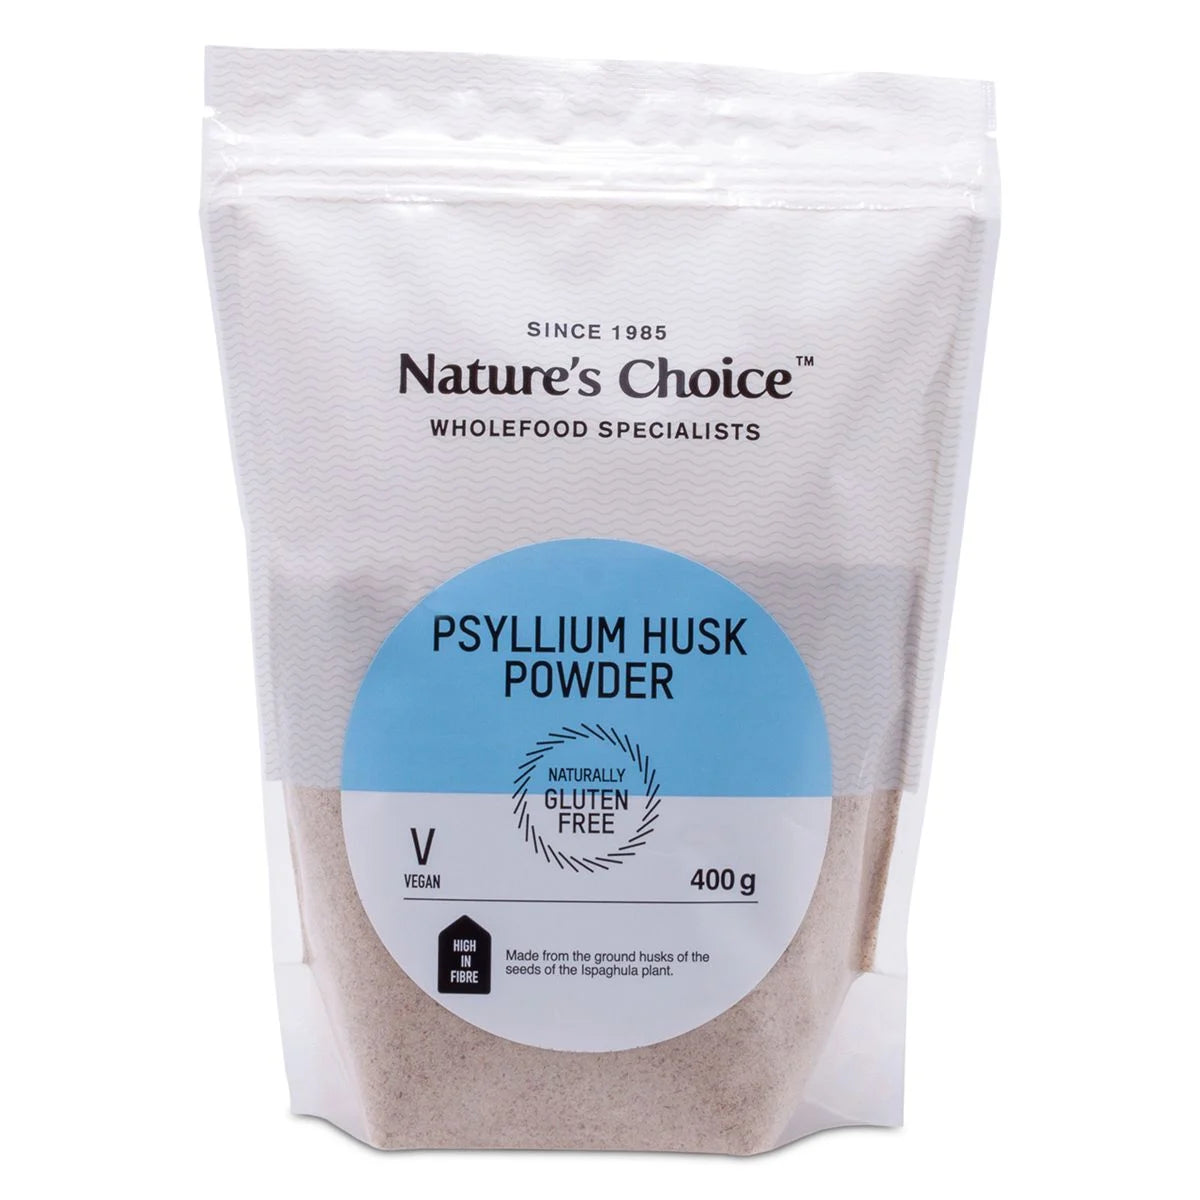 Nature's Choice Psyllium Husk Powder, 400g